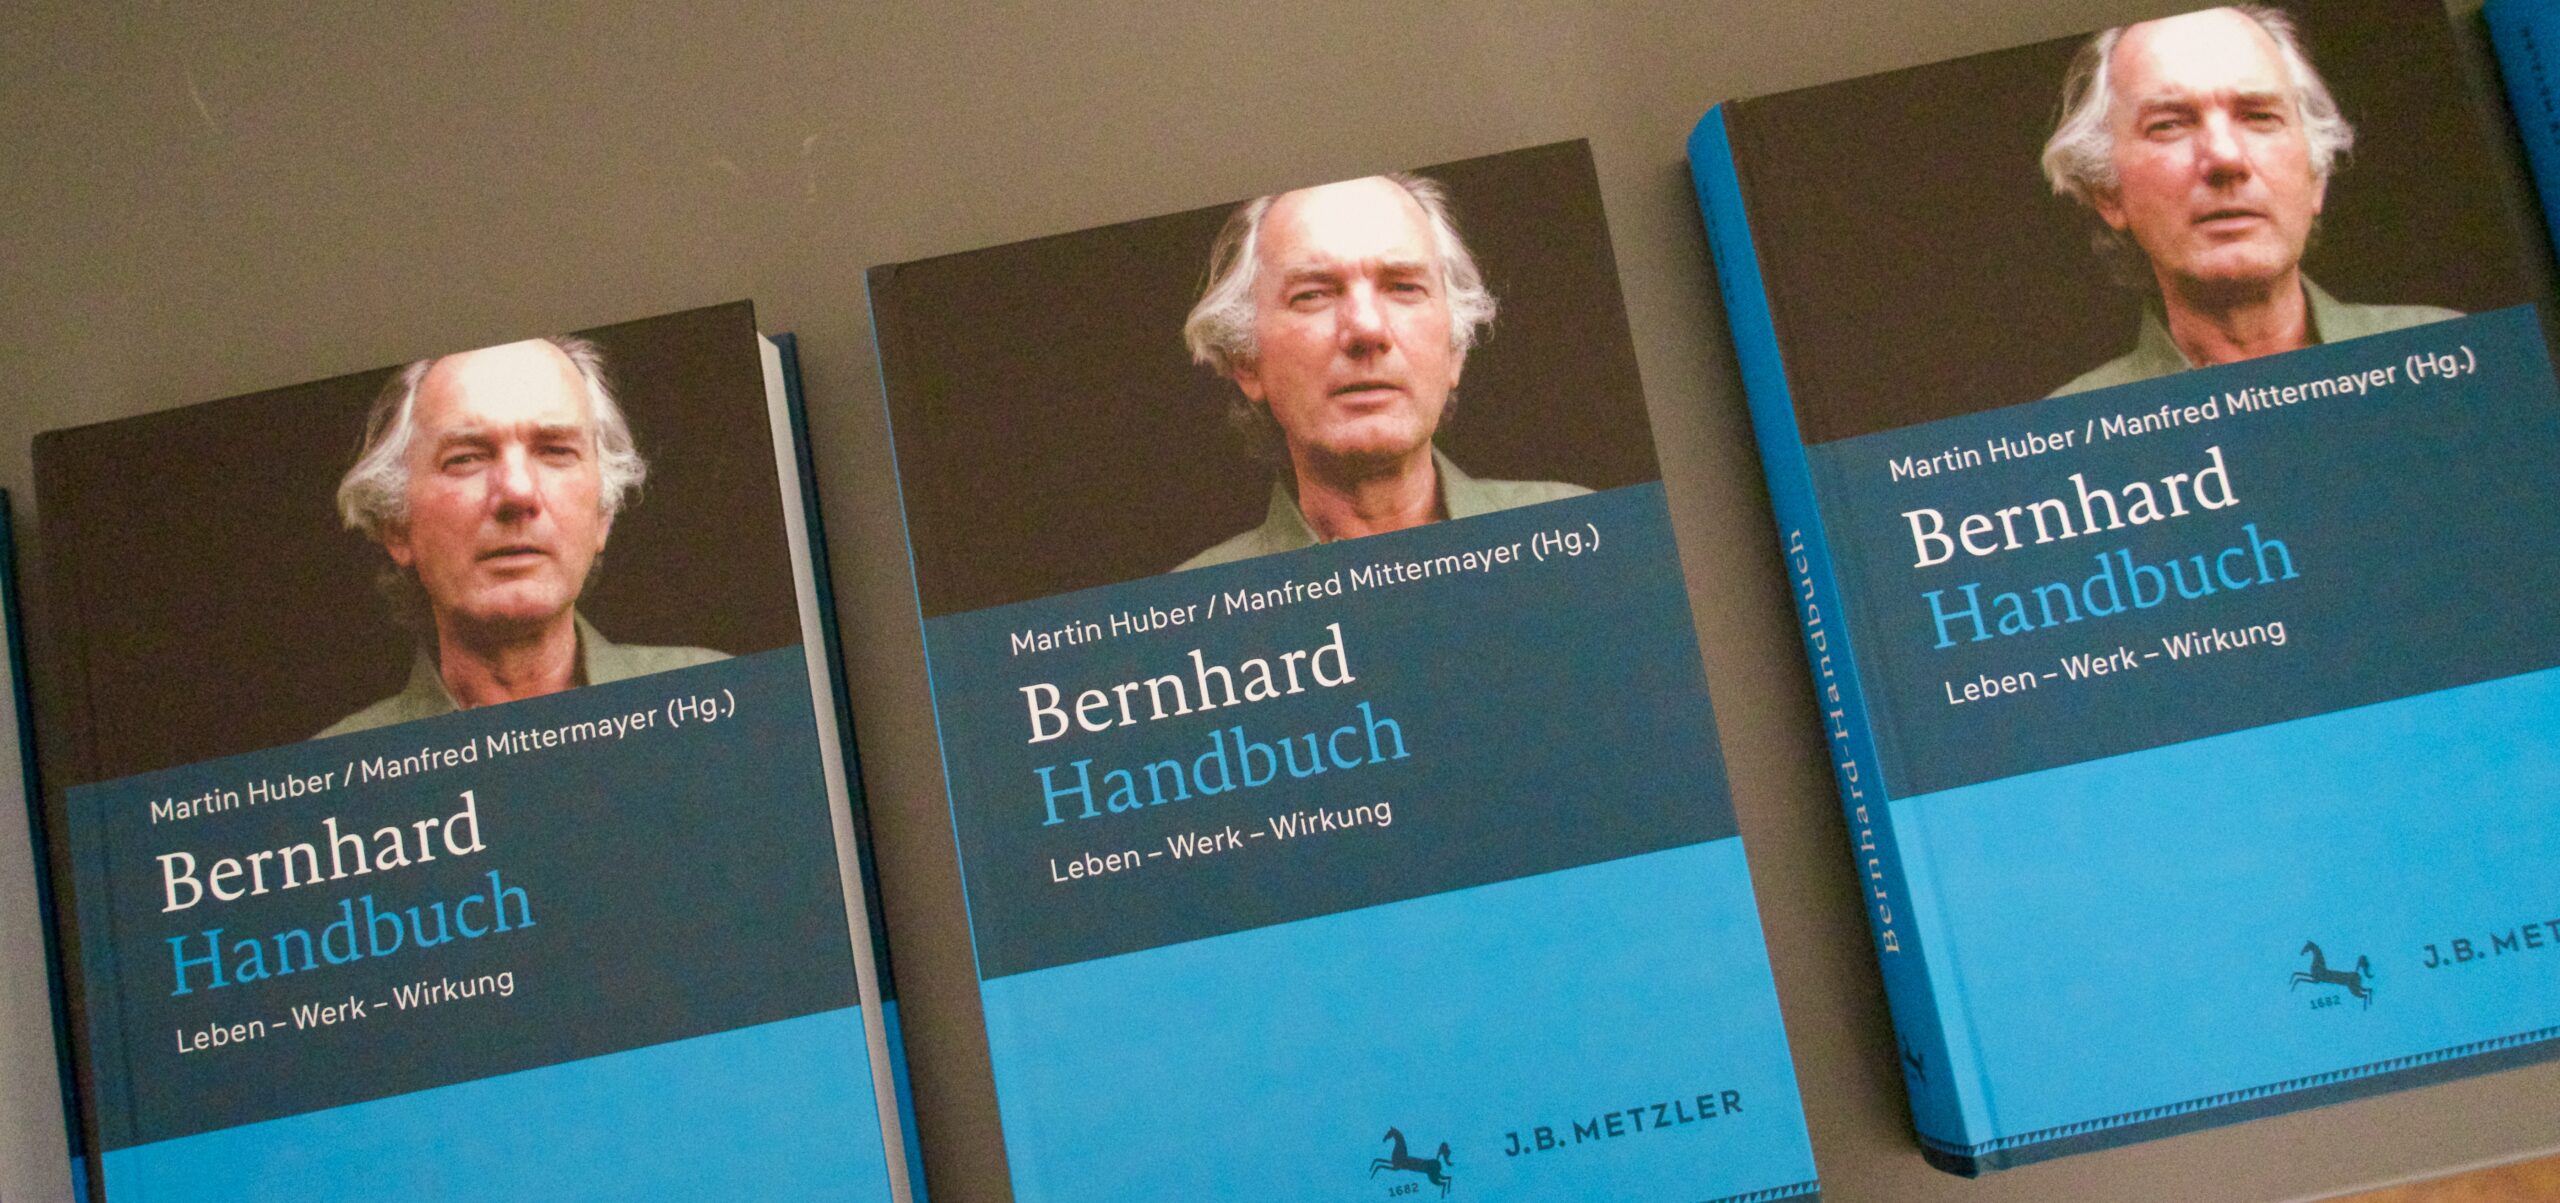 Bernhard-Handbuch